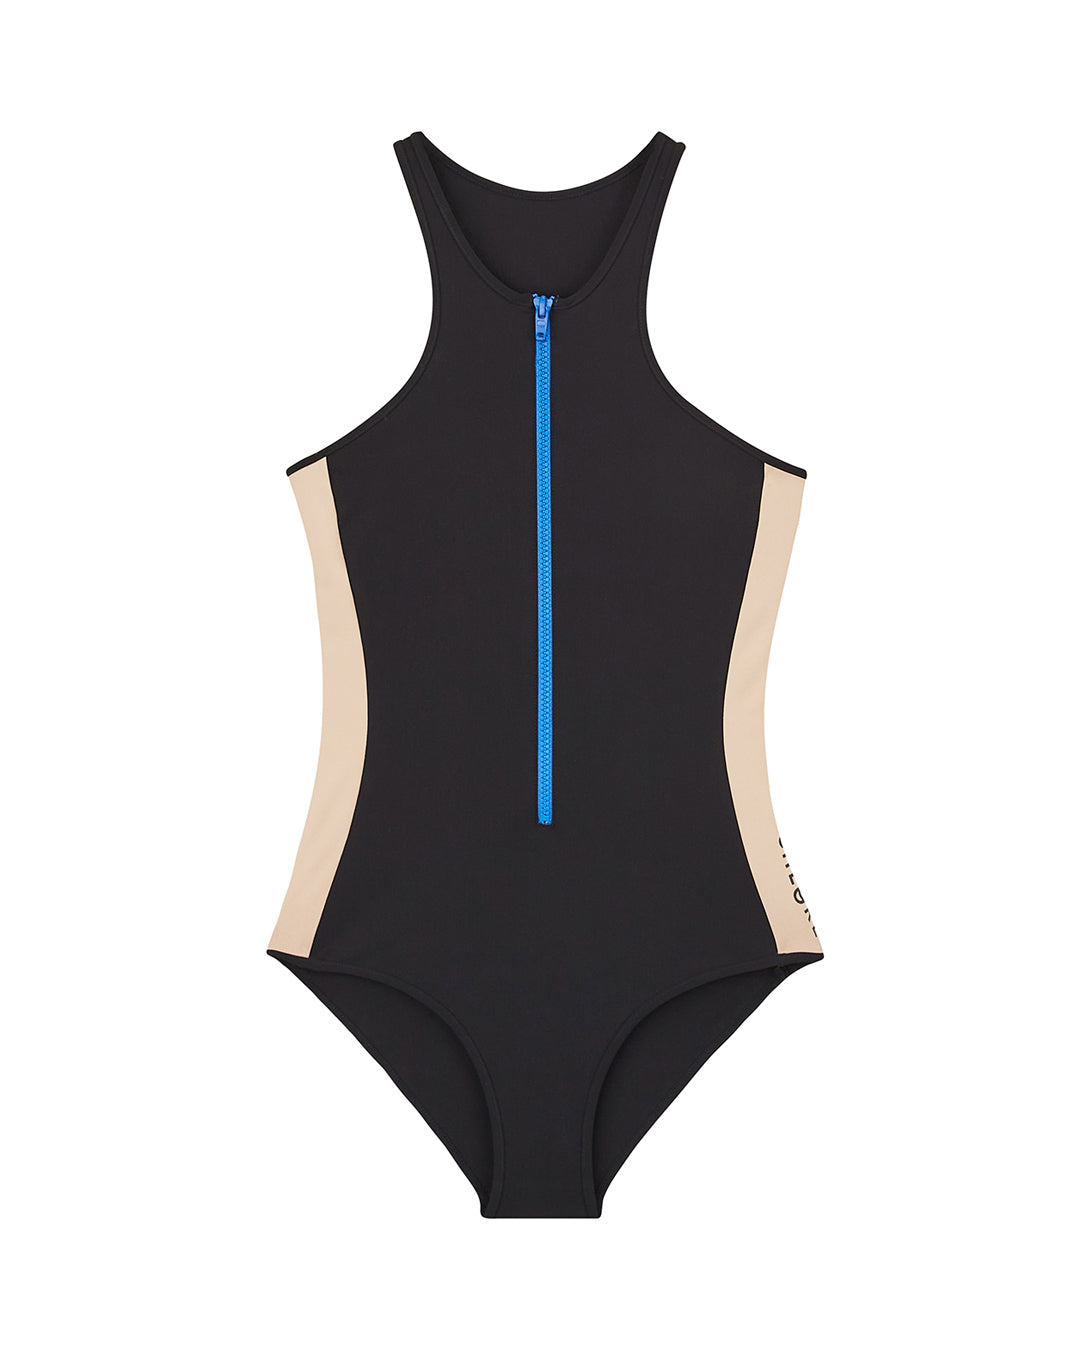 BONDI Racerback Swimsuit - CHLORE X PAUL KUSENI